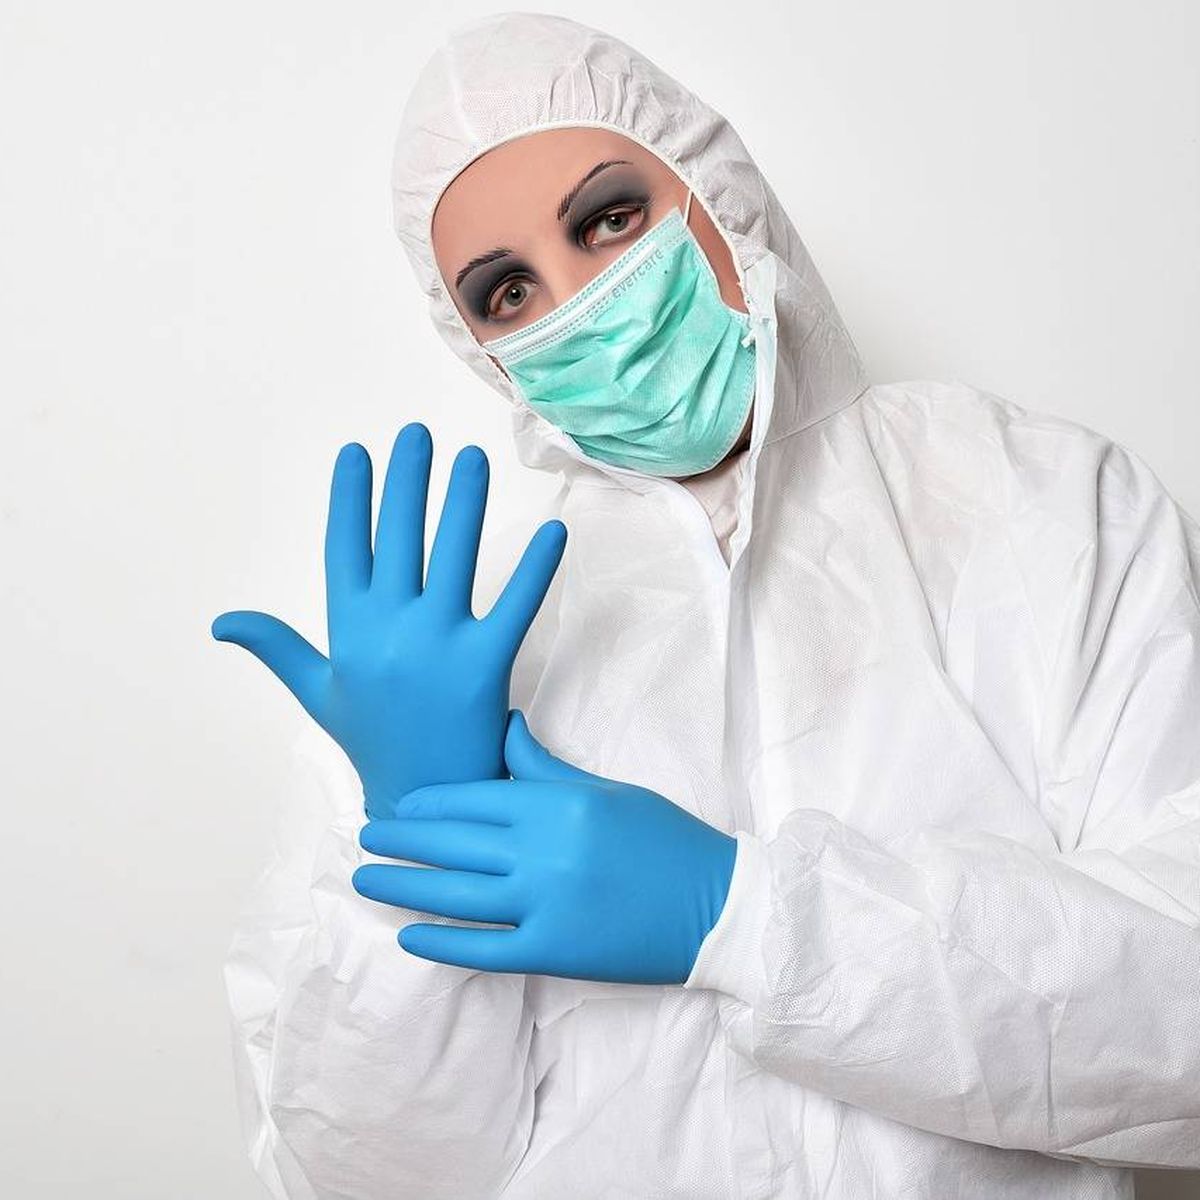 malla Alternativa Gaviota Son los guantes desechables de nitrilo y látex buena defensa contra el  coronavirus?